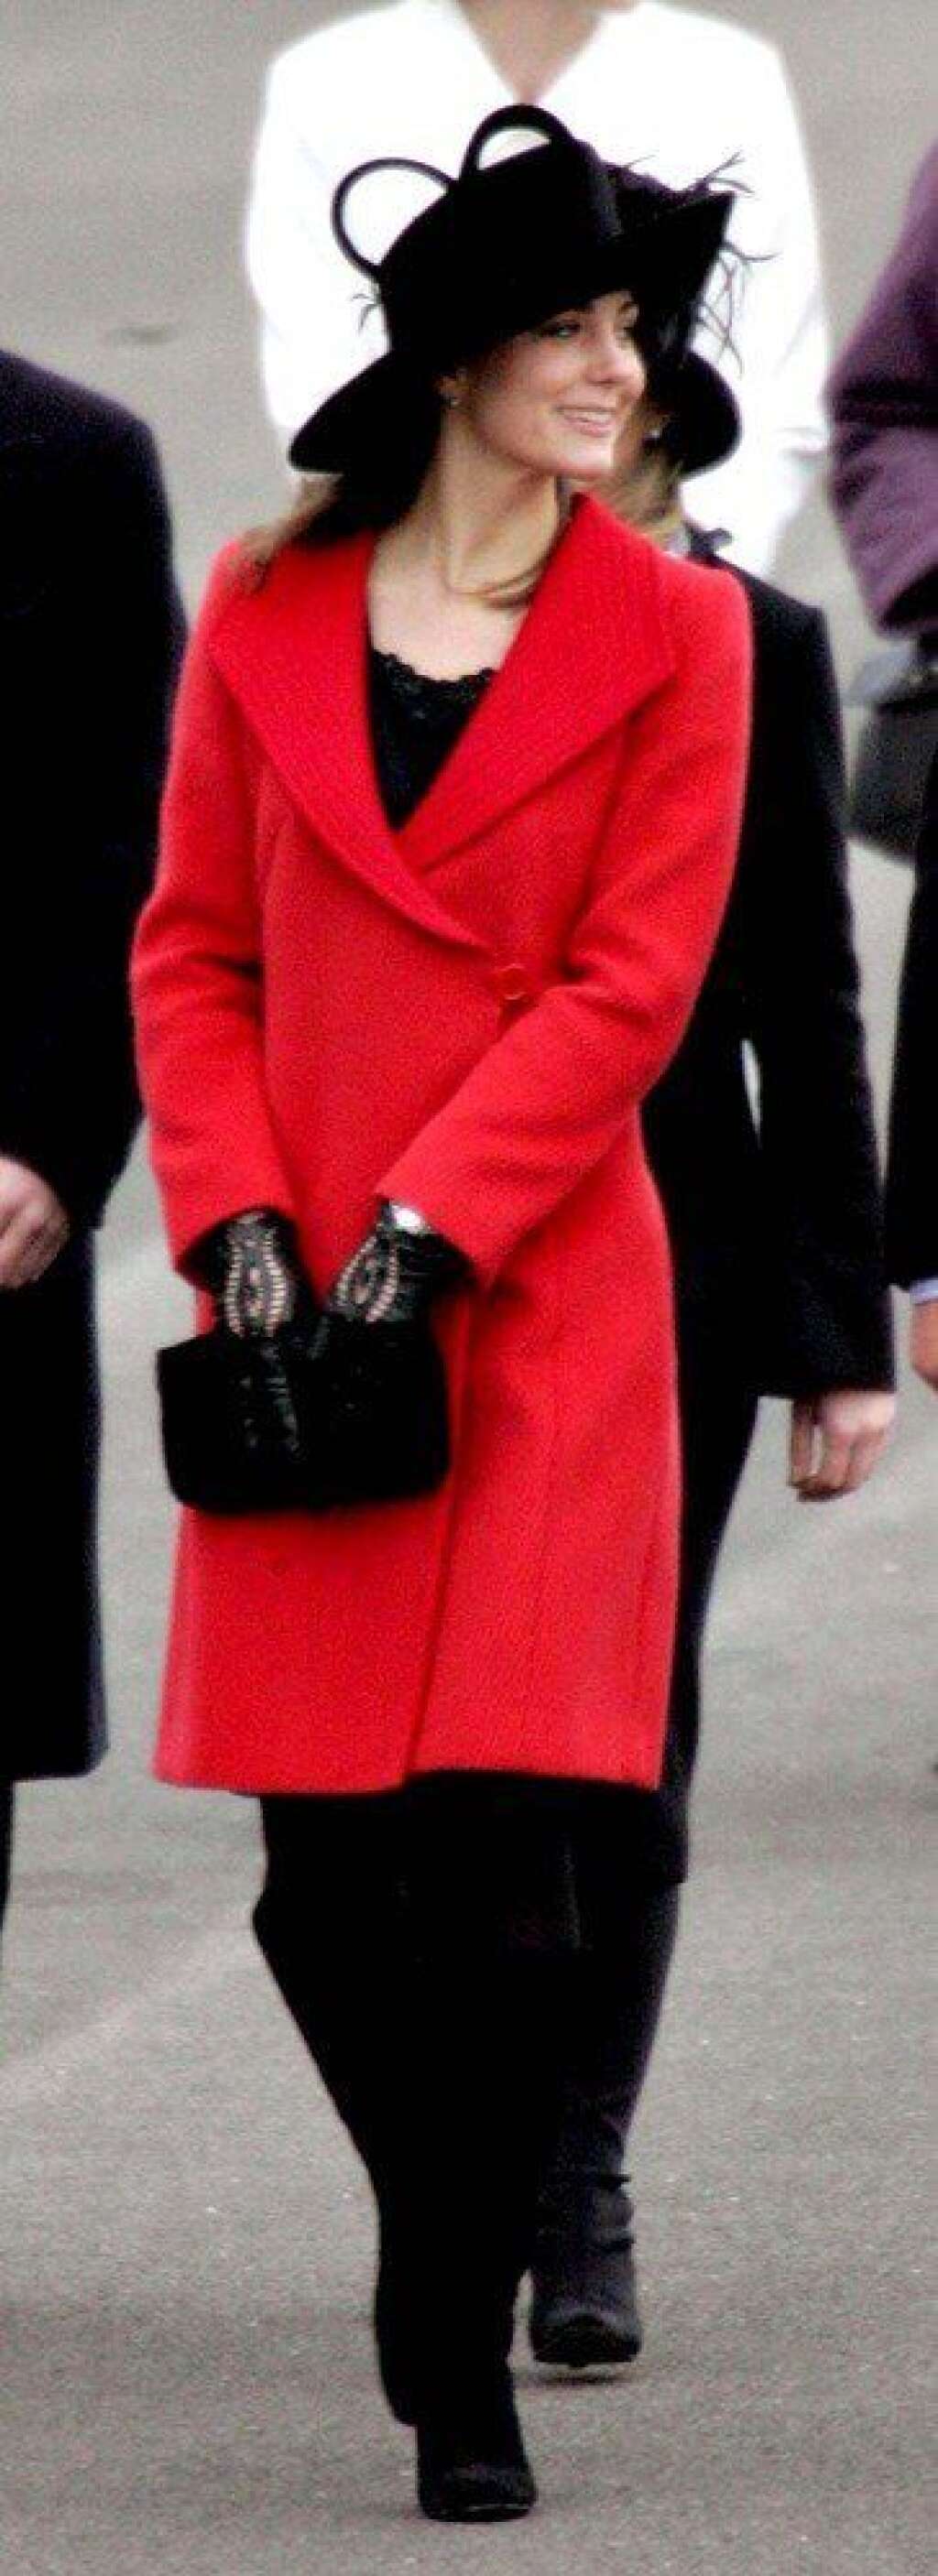 Look royal - Kate Middleton fait partie de ces femmes qui possèdent une élégance toute naturelle. Quatre ans avant ses fiançailles avec le prince William, elle arbore lors d'un défilé de l'Académie royale militaire de Sandhurst un magnifique chapeau, accessoire emblématique de la famille royale britannique. Nous sommes en 2006.